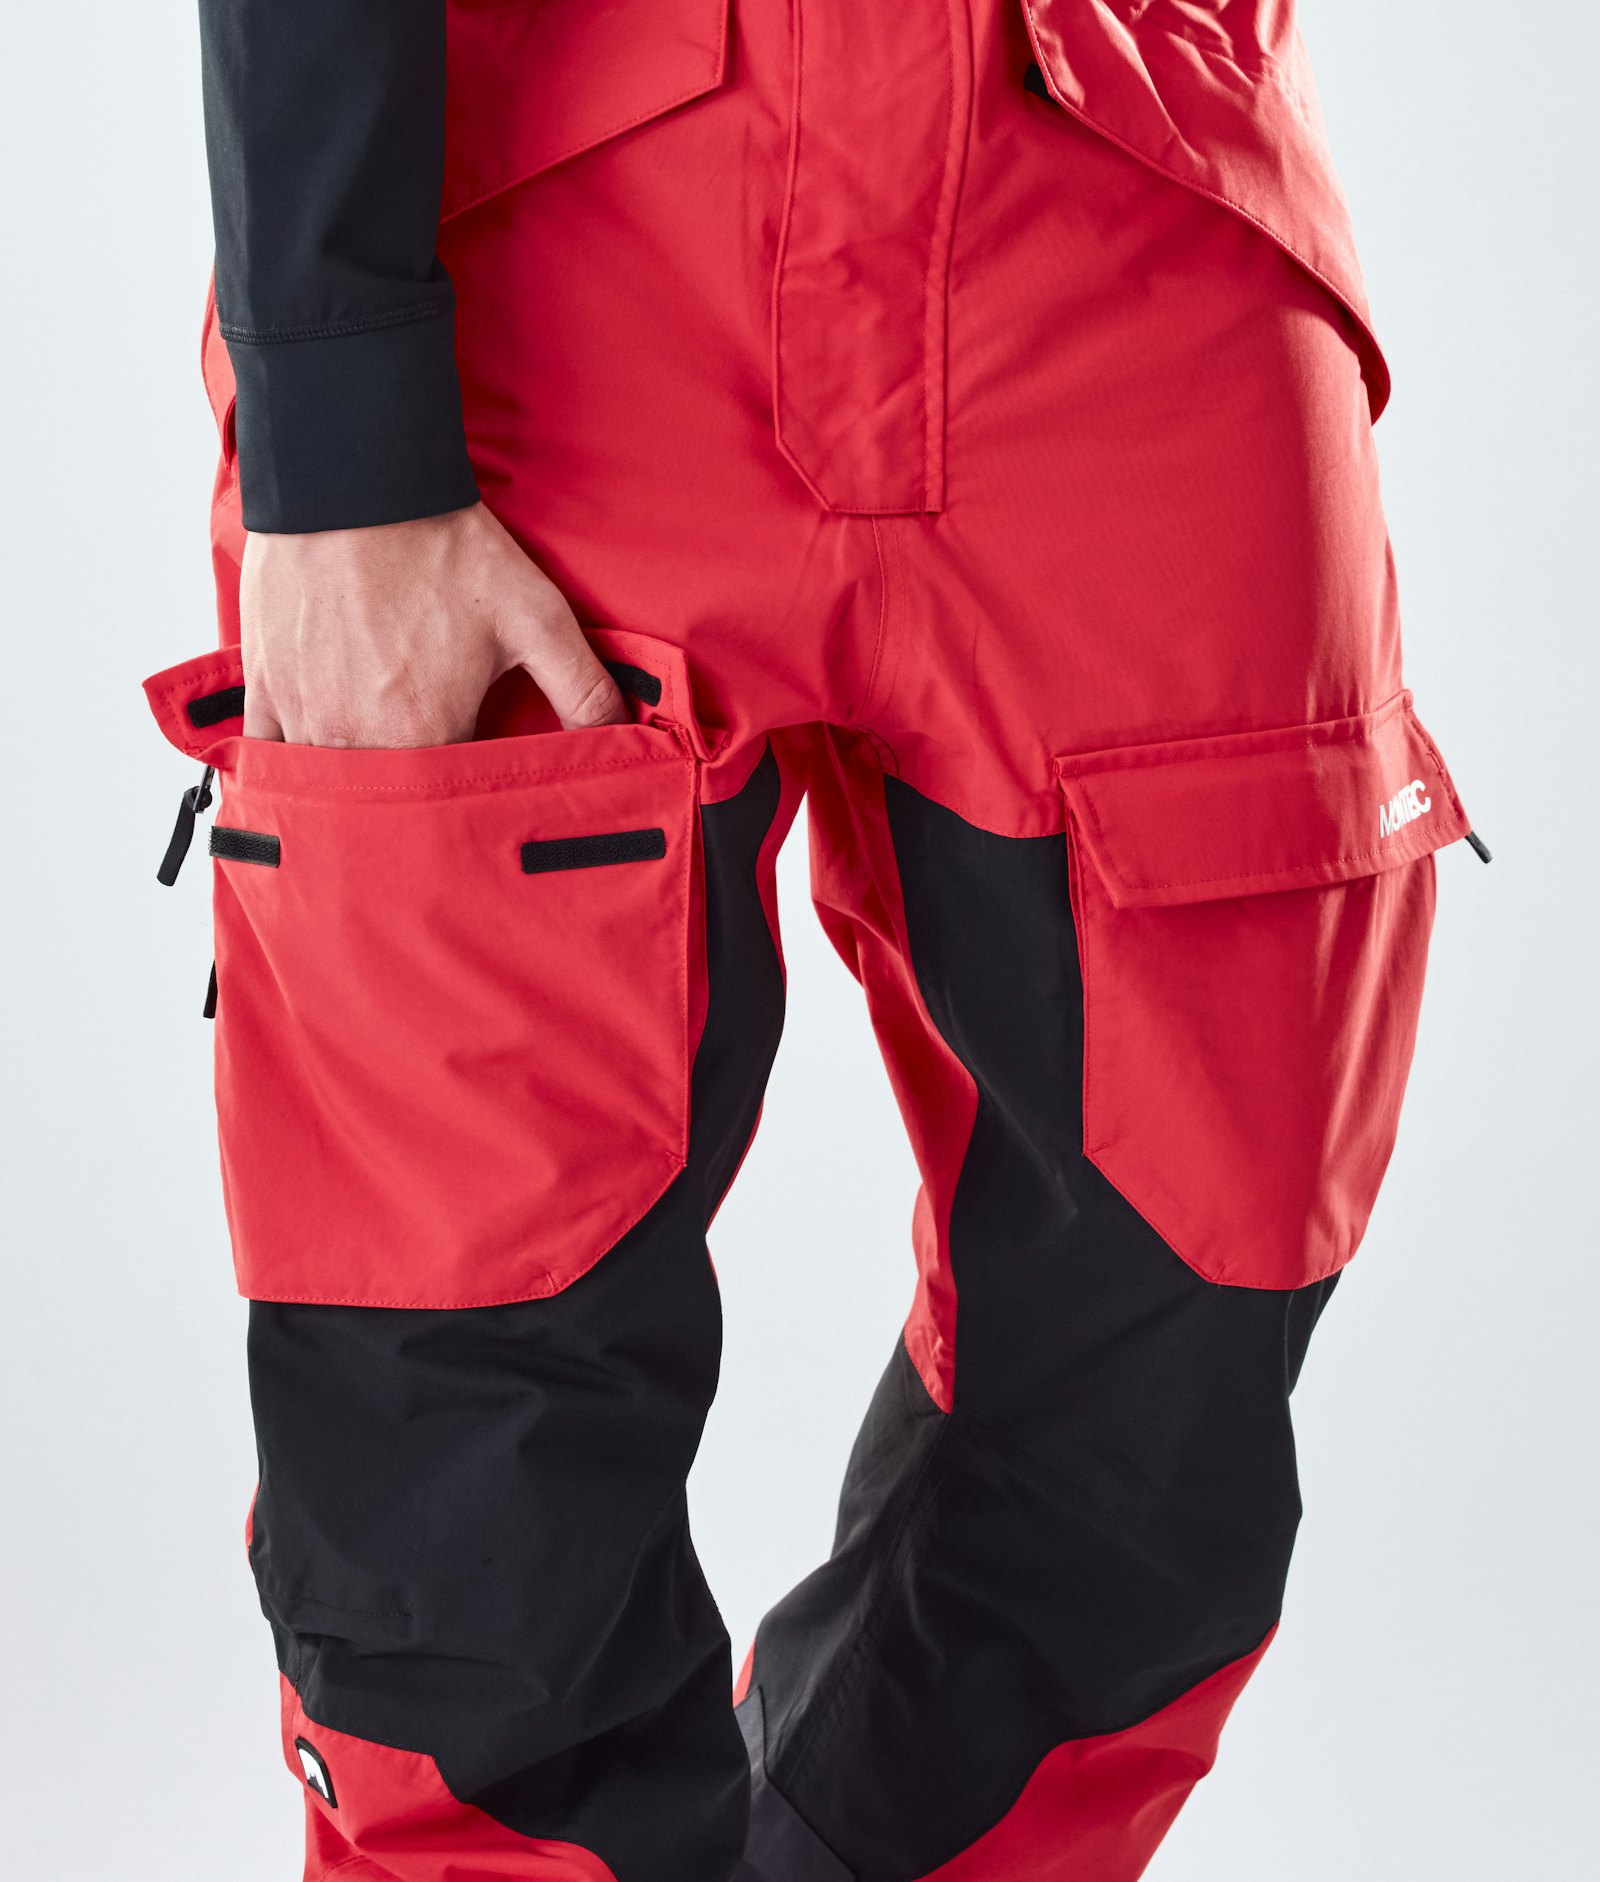 Montec Fawk 2020 Snowboard Broek Heren Red/Black